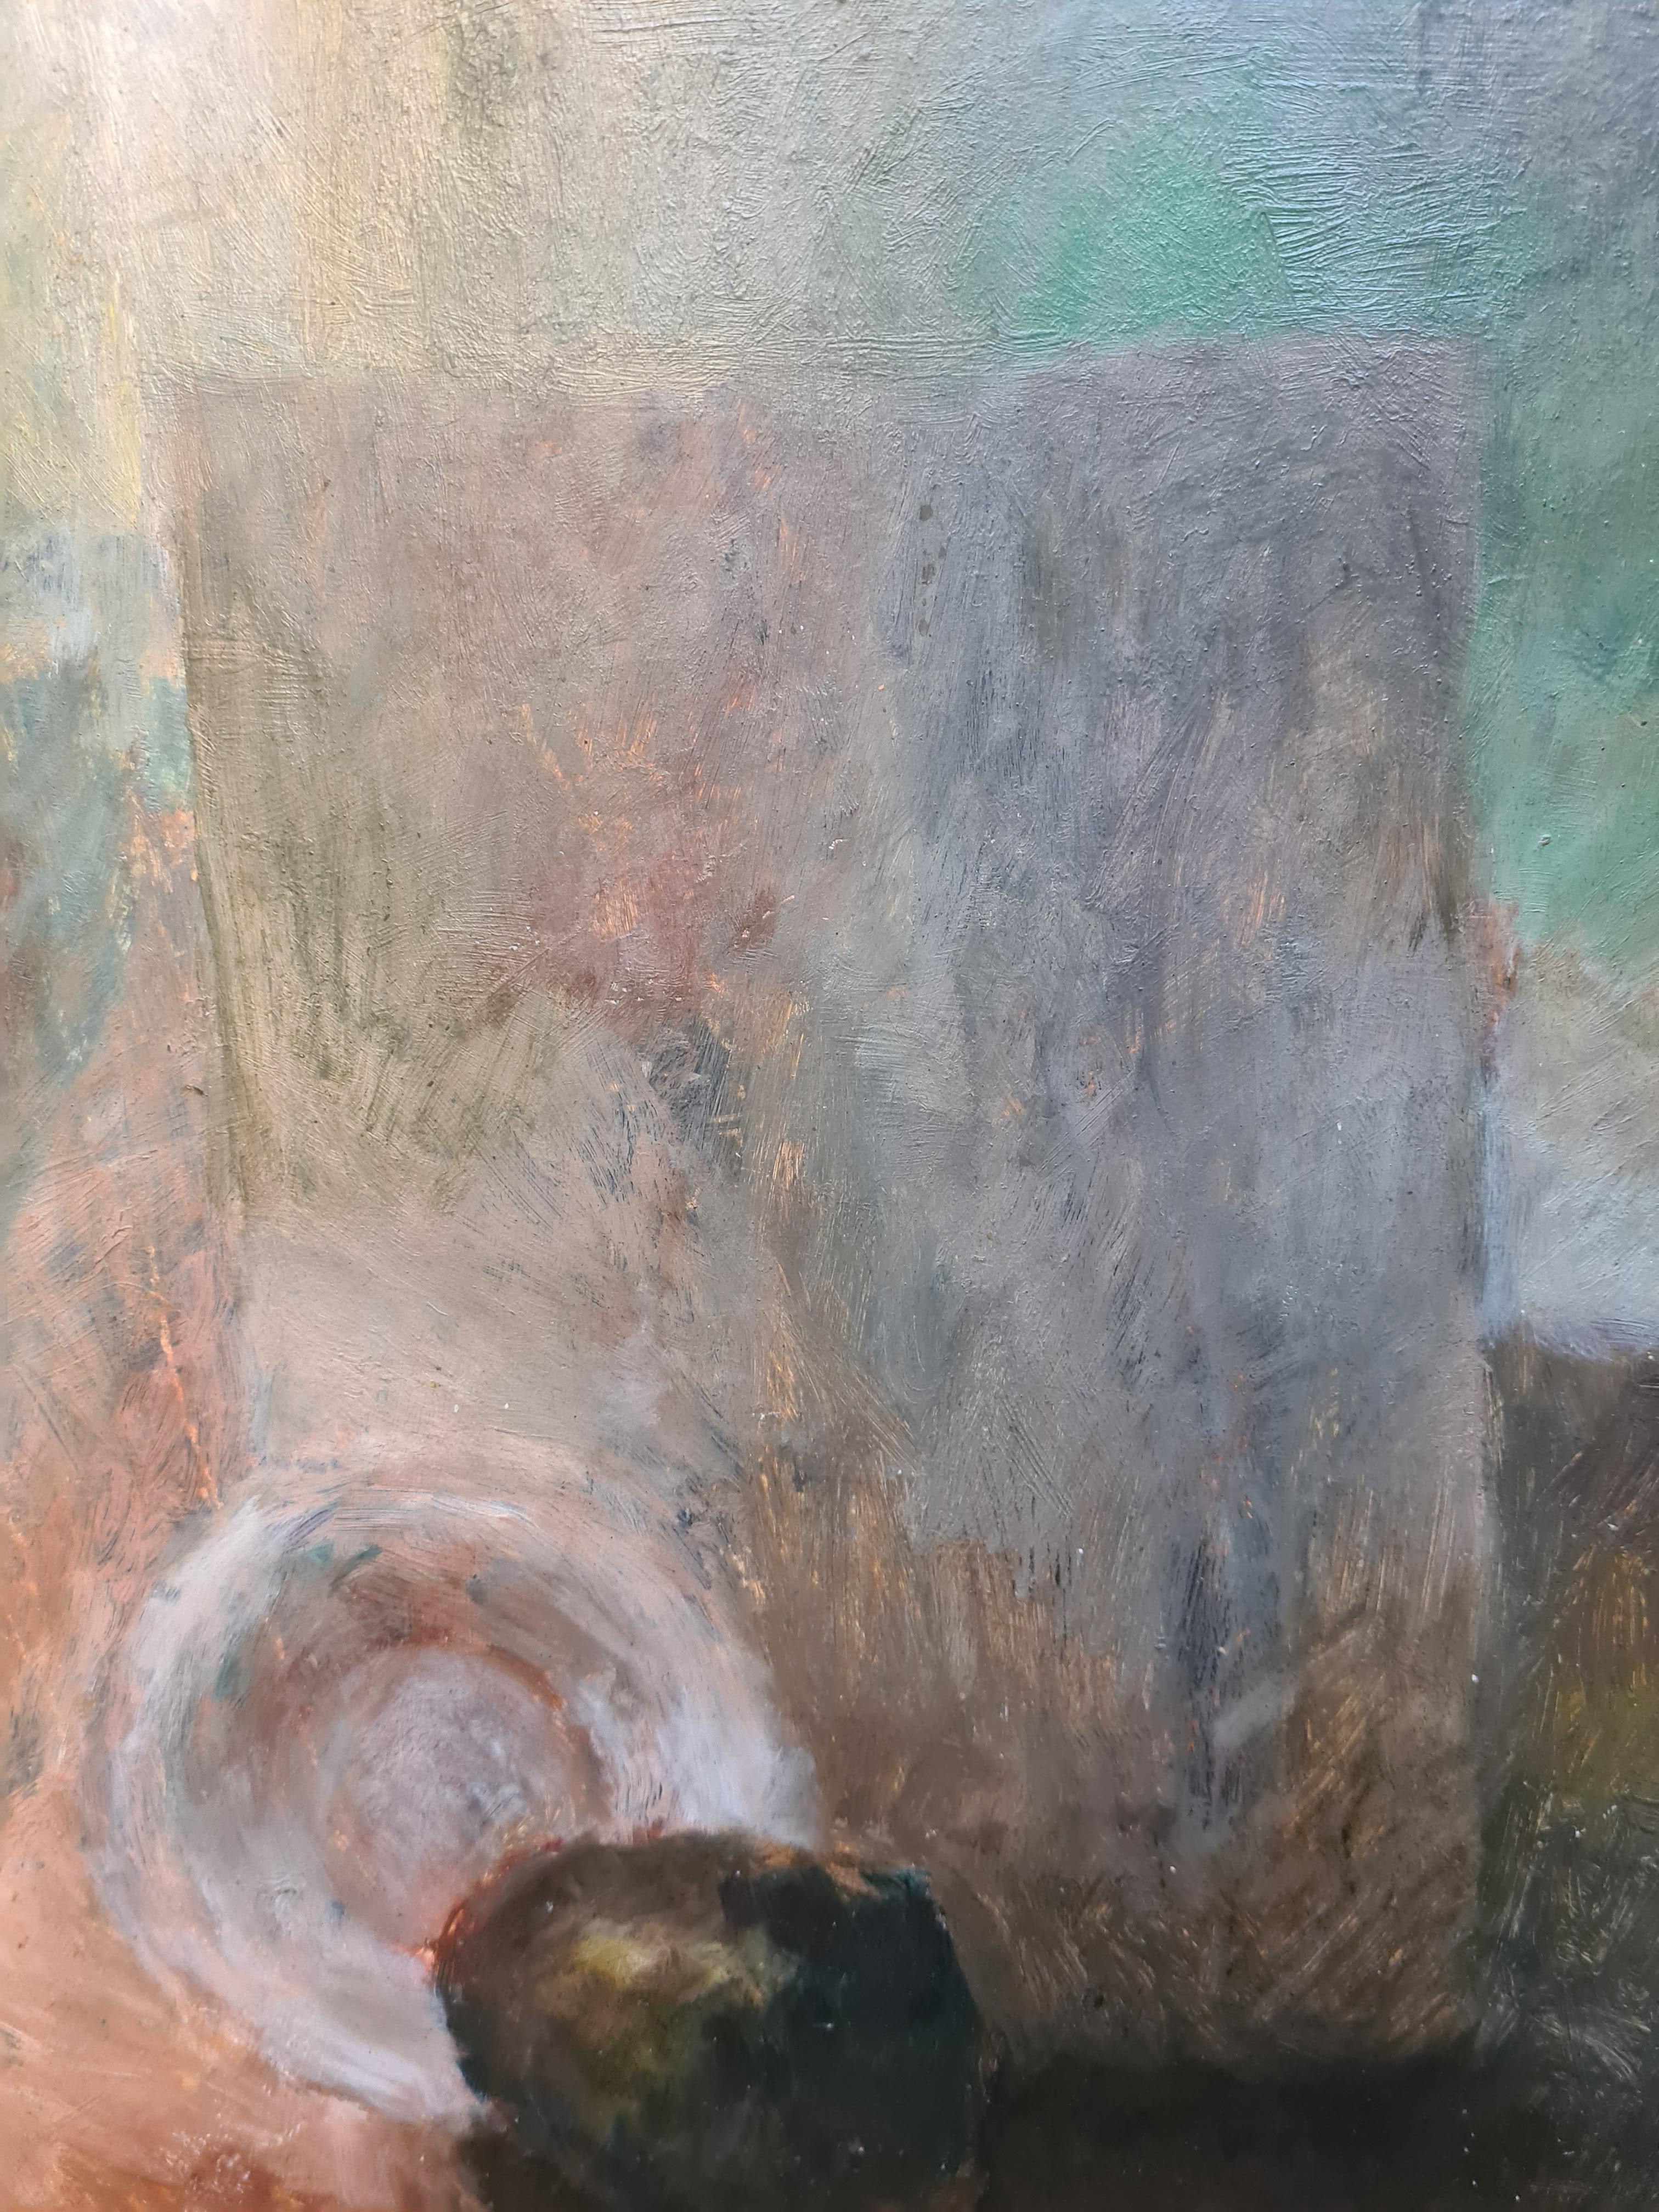 Huile sur carton du milieu du 20ème siècle, nature morte post-impressionniste du peintre polonais P Mostowski, signée en bas à droite, présentée dans un cadre moderne contemporain.

Nature morte charmante et paisible, joli contraste d'ombre et de